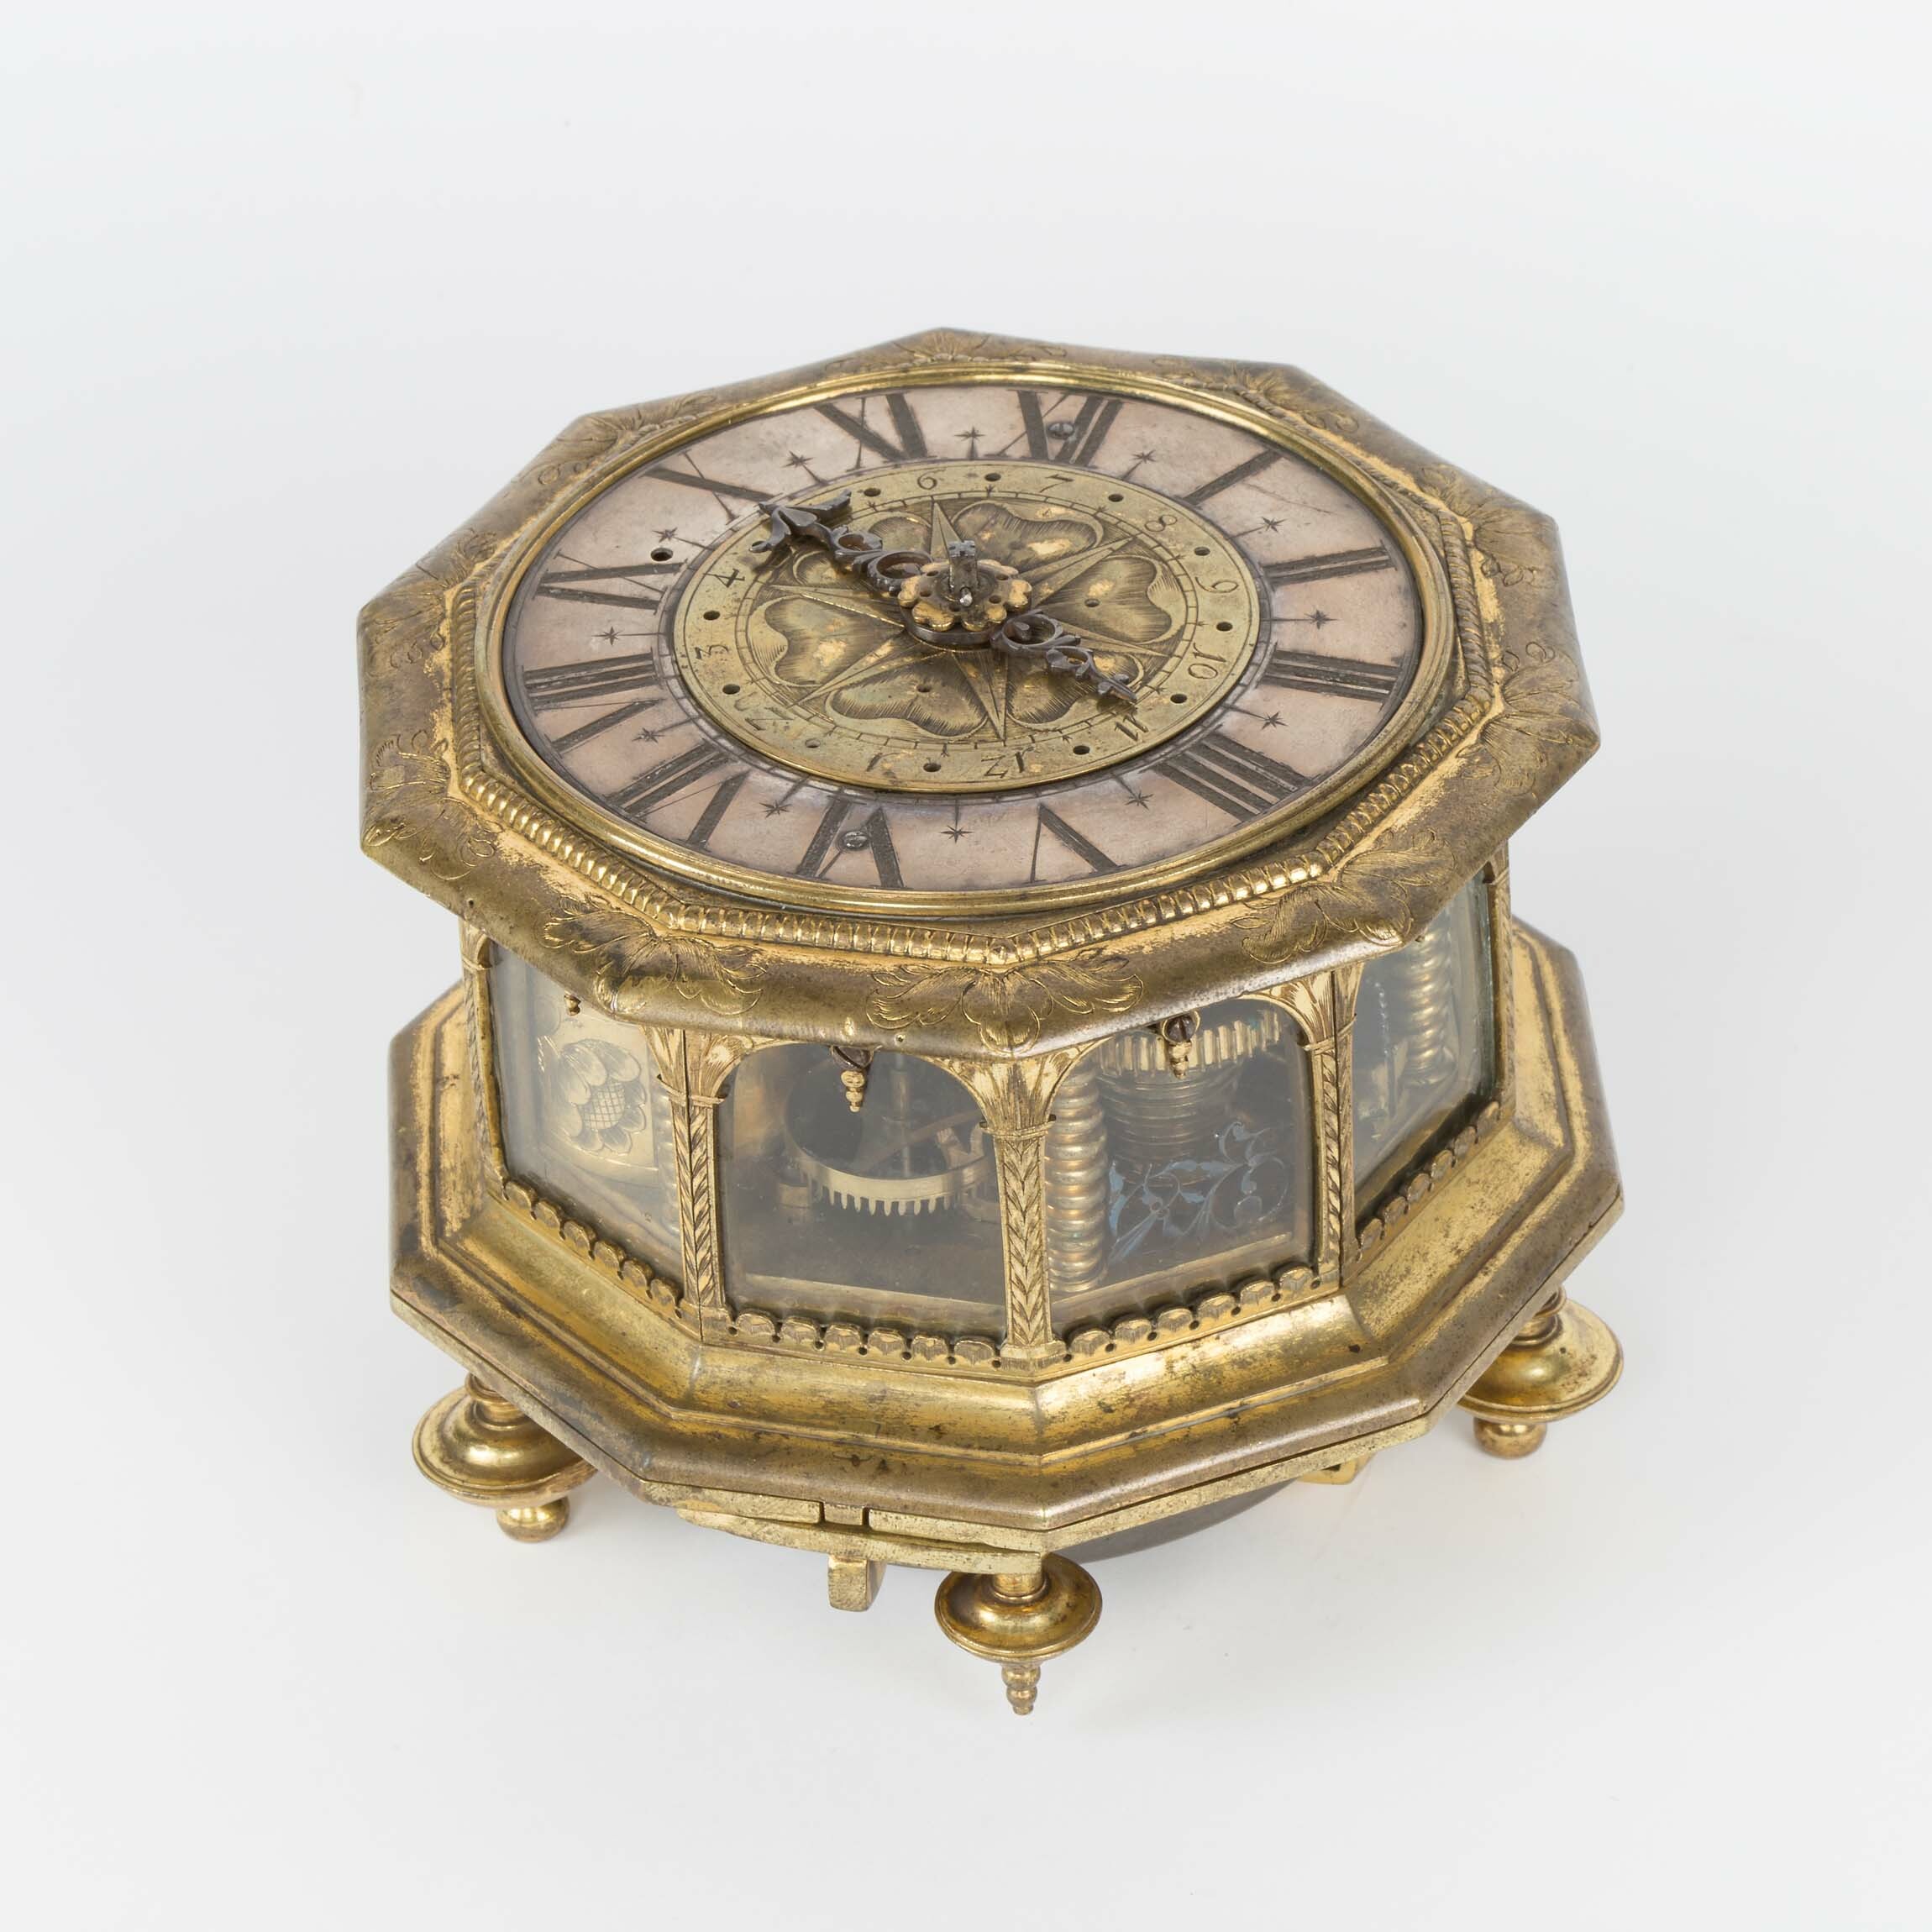 Tischuhr, Samuel Berckmann, Augsburg, um 1680 (Deutsches Uhrenmuseum CC BY-SA)